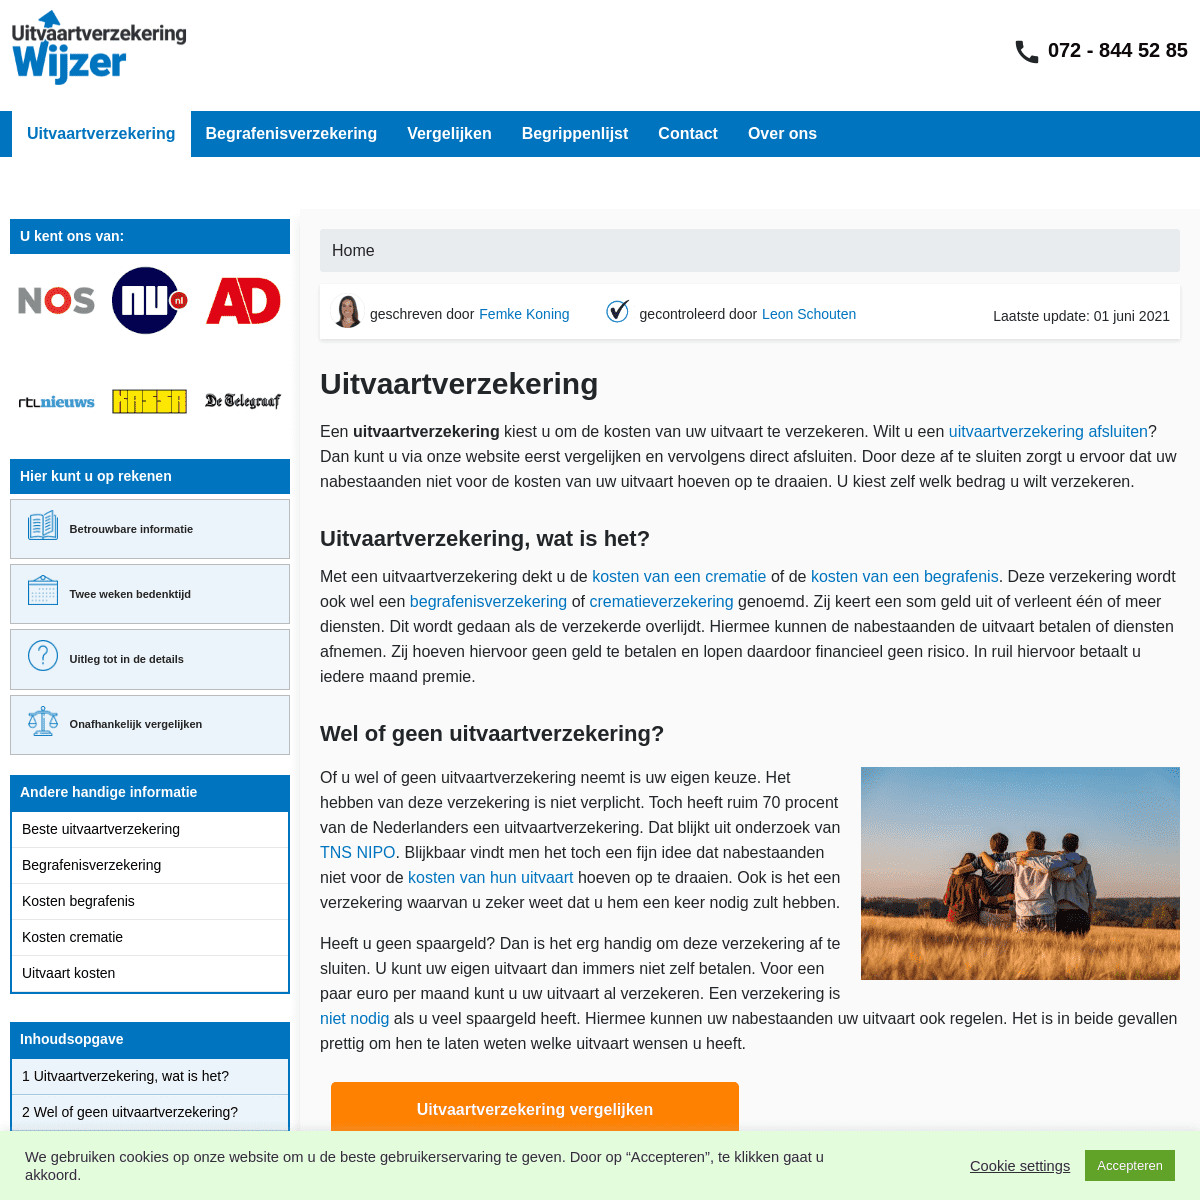 A complete backup of https://uitvaartverzekeringwijzer.net